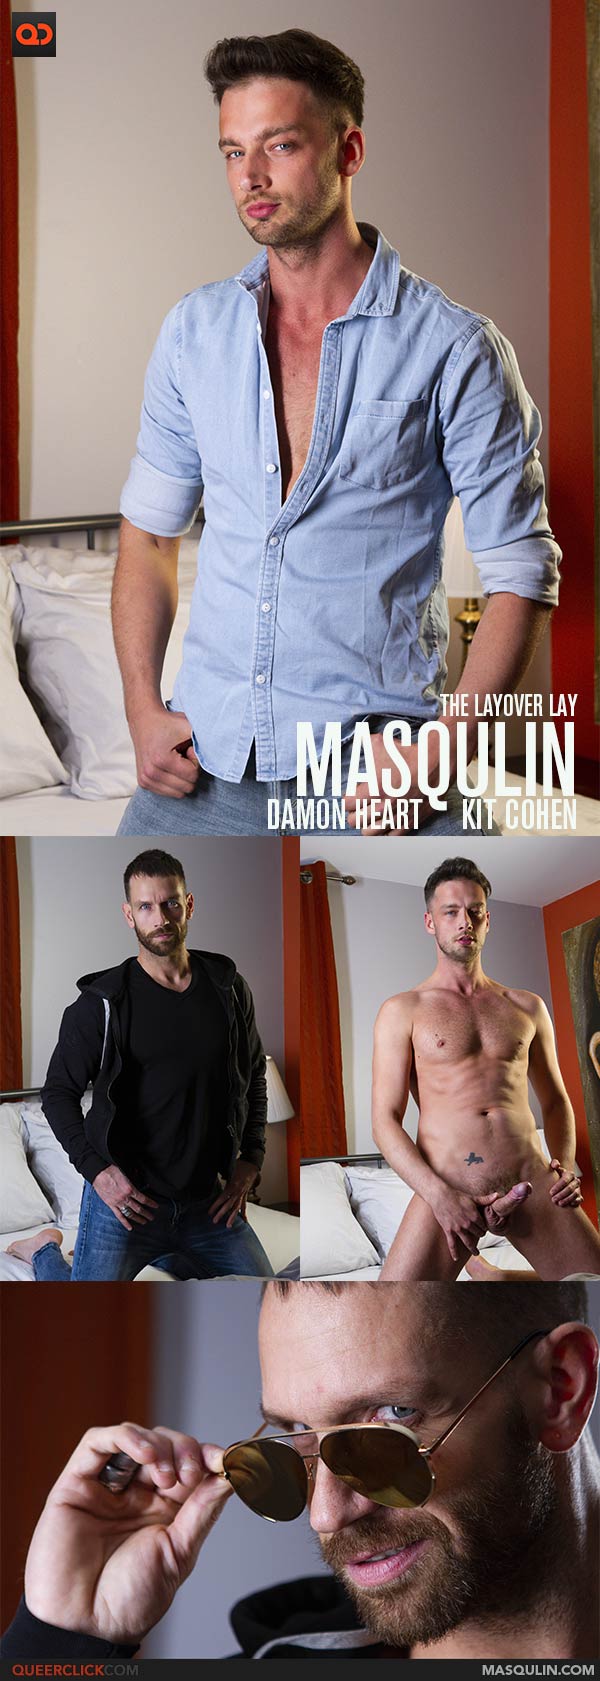 Masqulin: Damon Heart and Kit Cohen